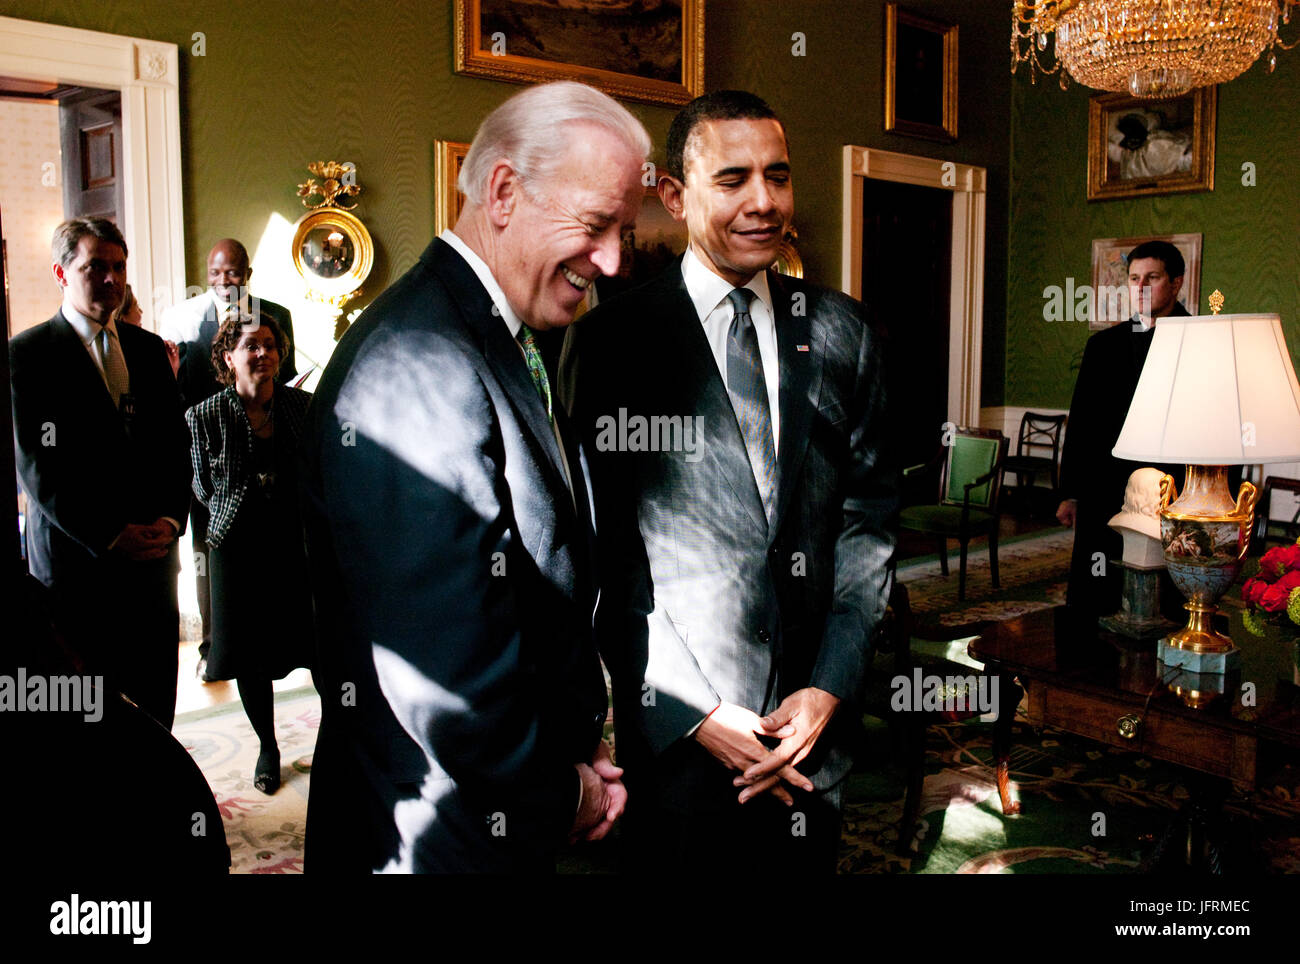 Le président Barack Obama et le Vice-président Joe Biden dans la Salle verte, avant une réunion avec les maires, 2/20/09. Photo Officiel de la Maison Blanche par Pete Souza Banque D'Images